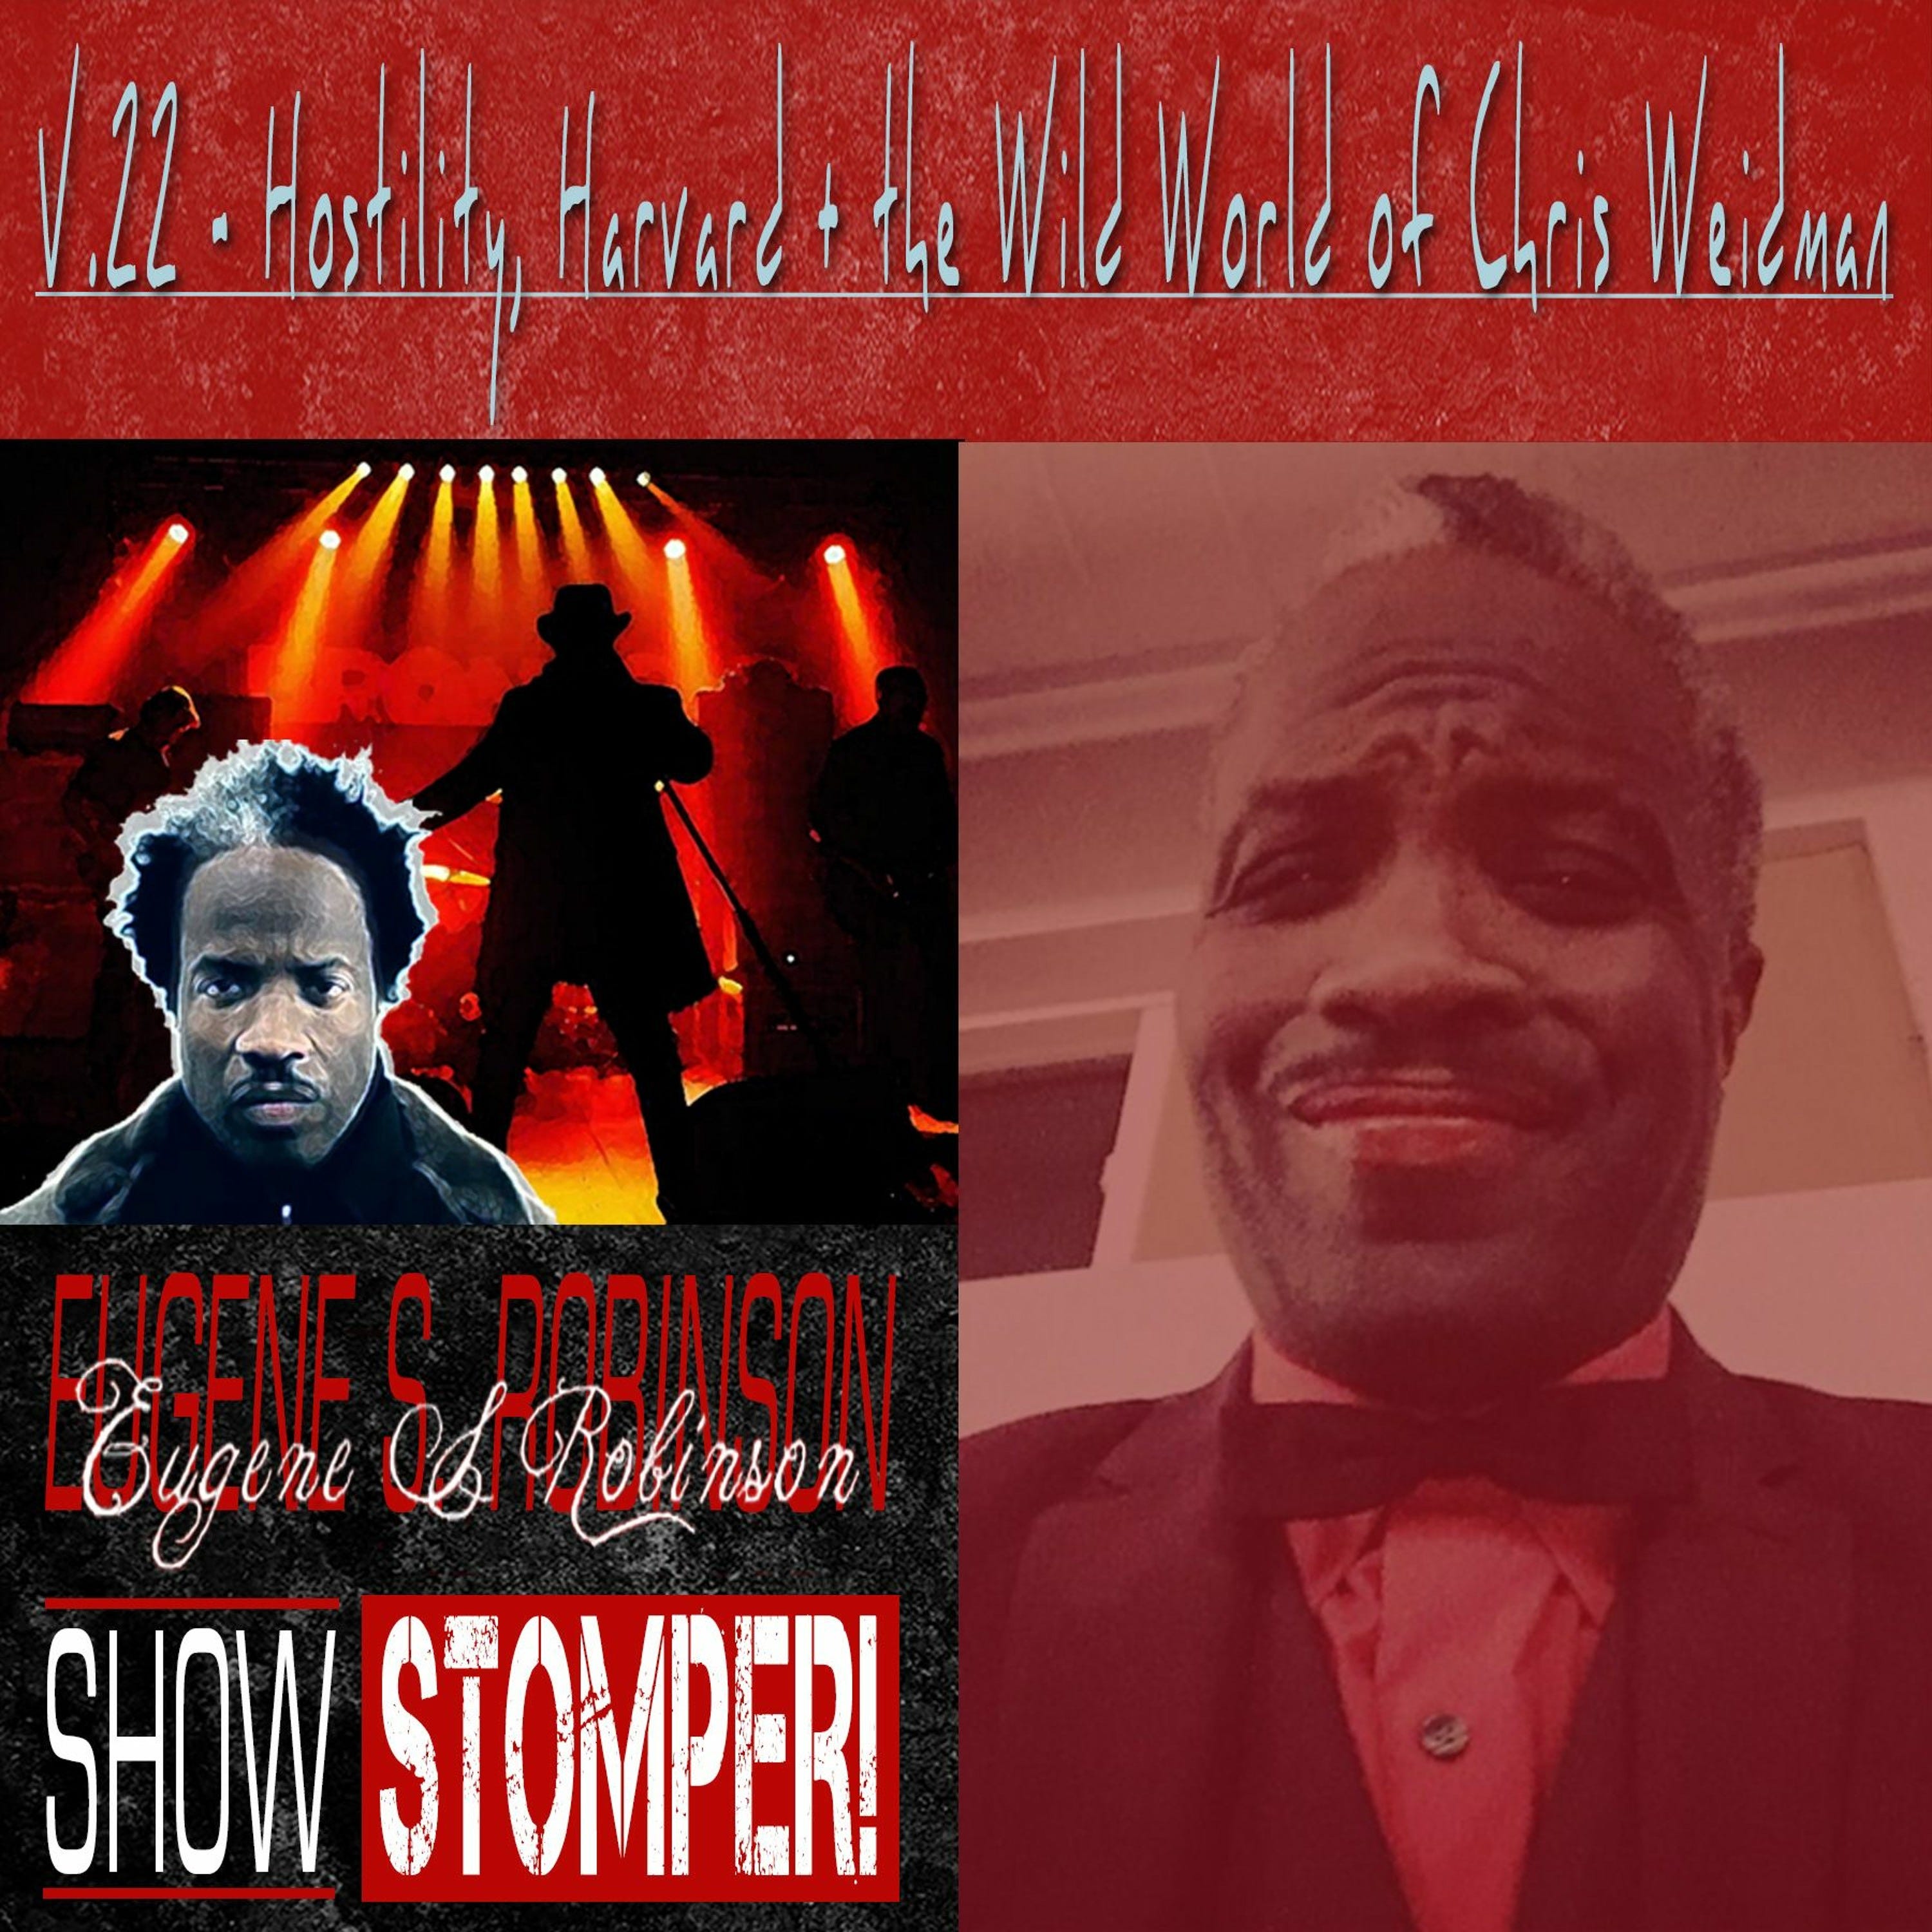 The Eugene S. Robinson Show Stomper! V.22 - Hostility Harvard + The Wild World Of Chris Weidman